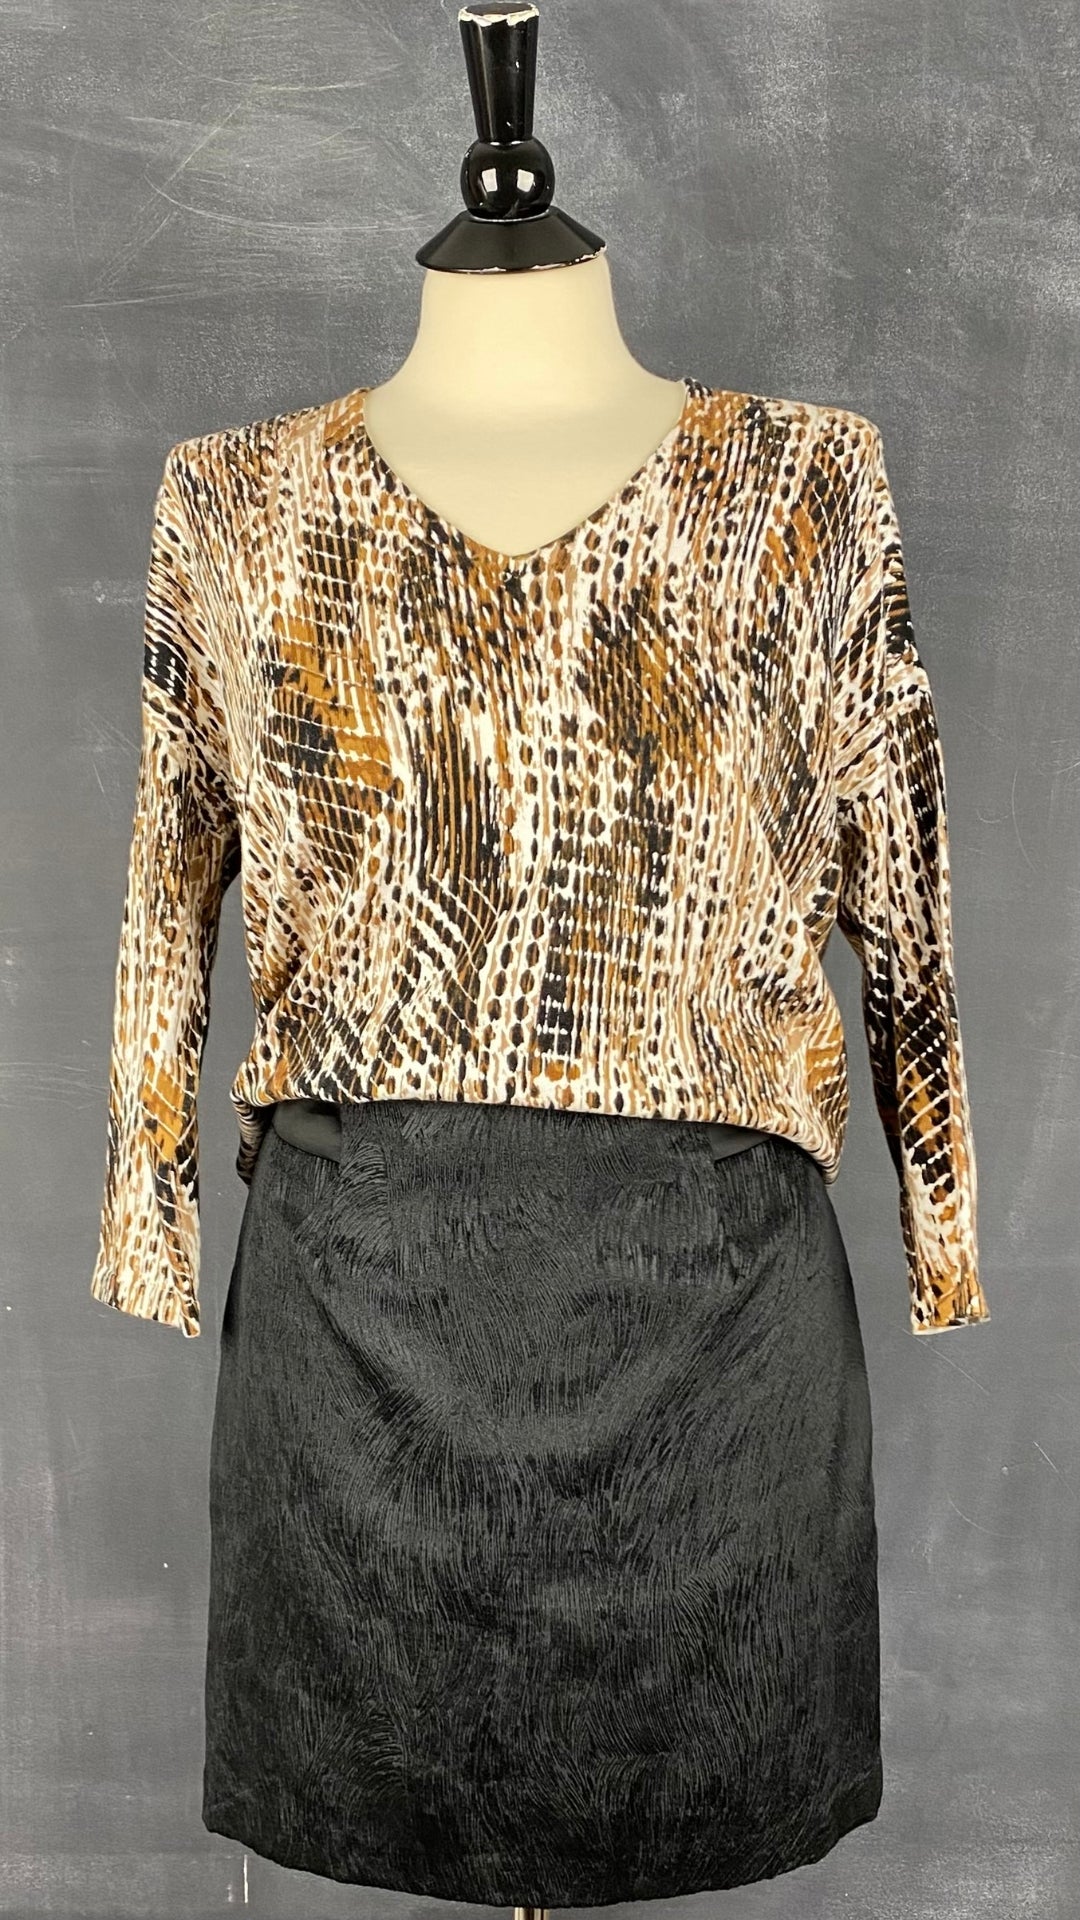 Chandail tricot col v motif style léopard Olsen, taille s/m. Vue de l'agencement avec la jupe texturée chic Tristan.